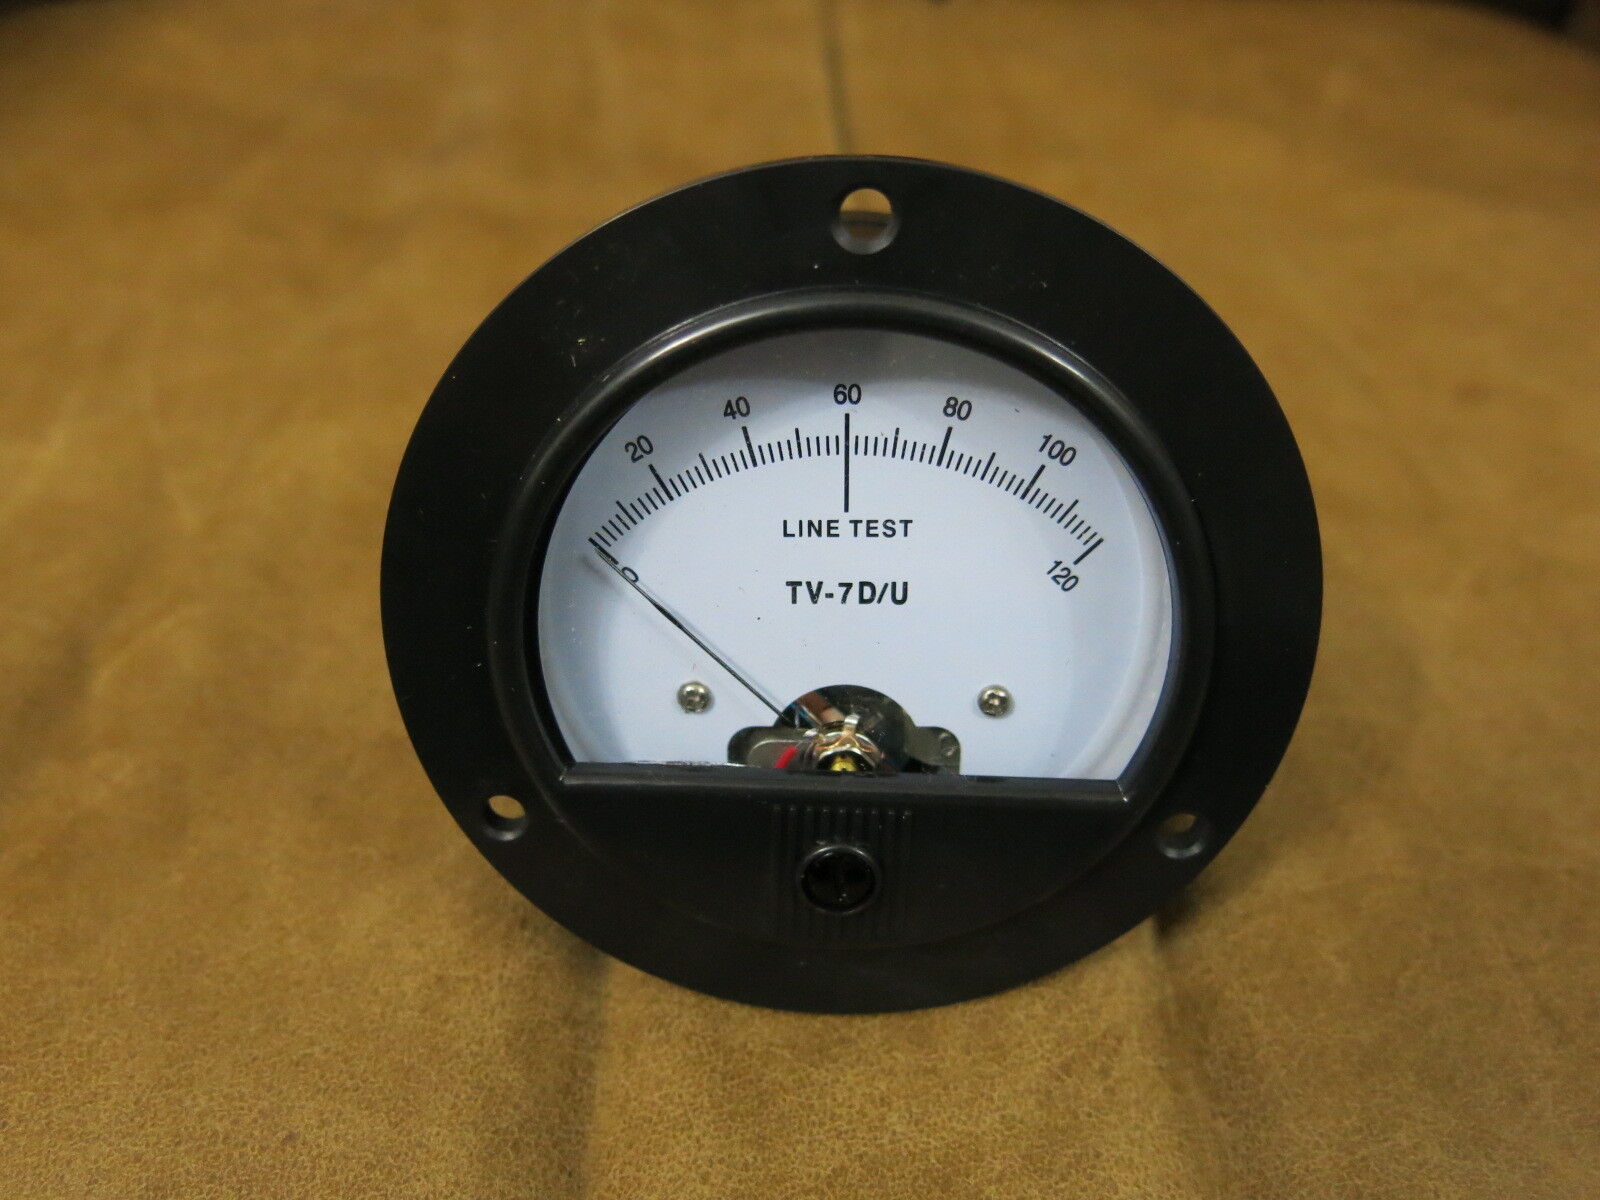 TV-7 TV-7A/U TV-7B/U TV-7C/U TV-7D/U tube tester meter (replica) NEW